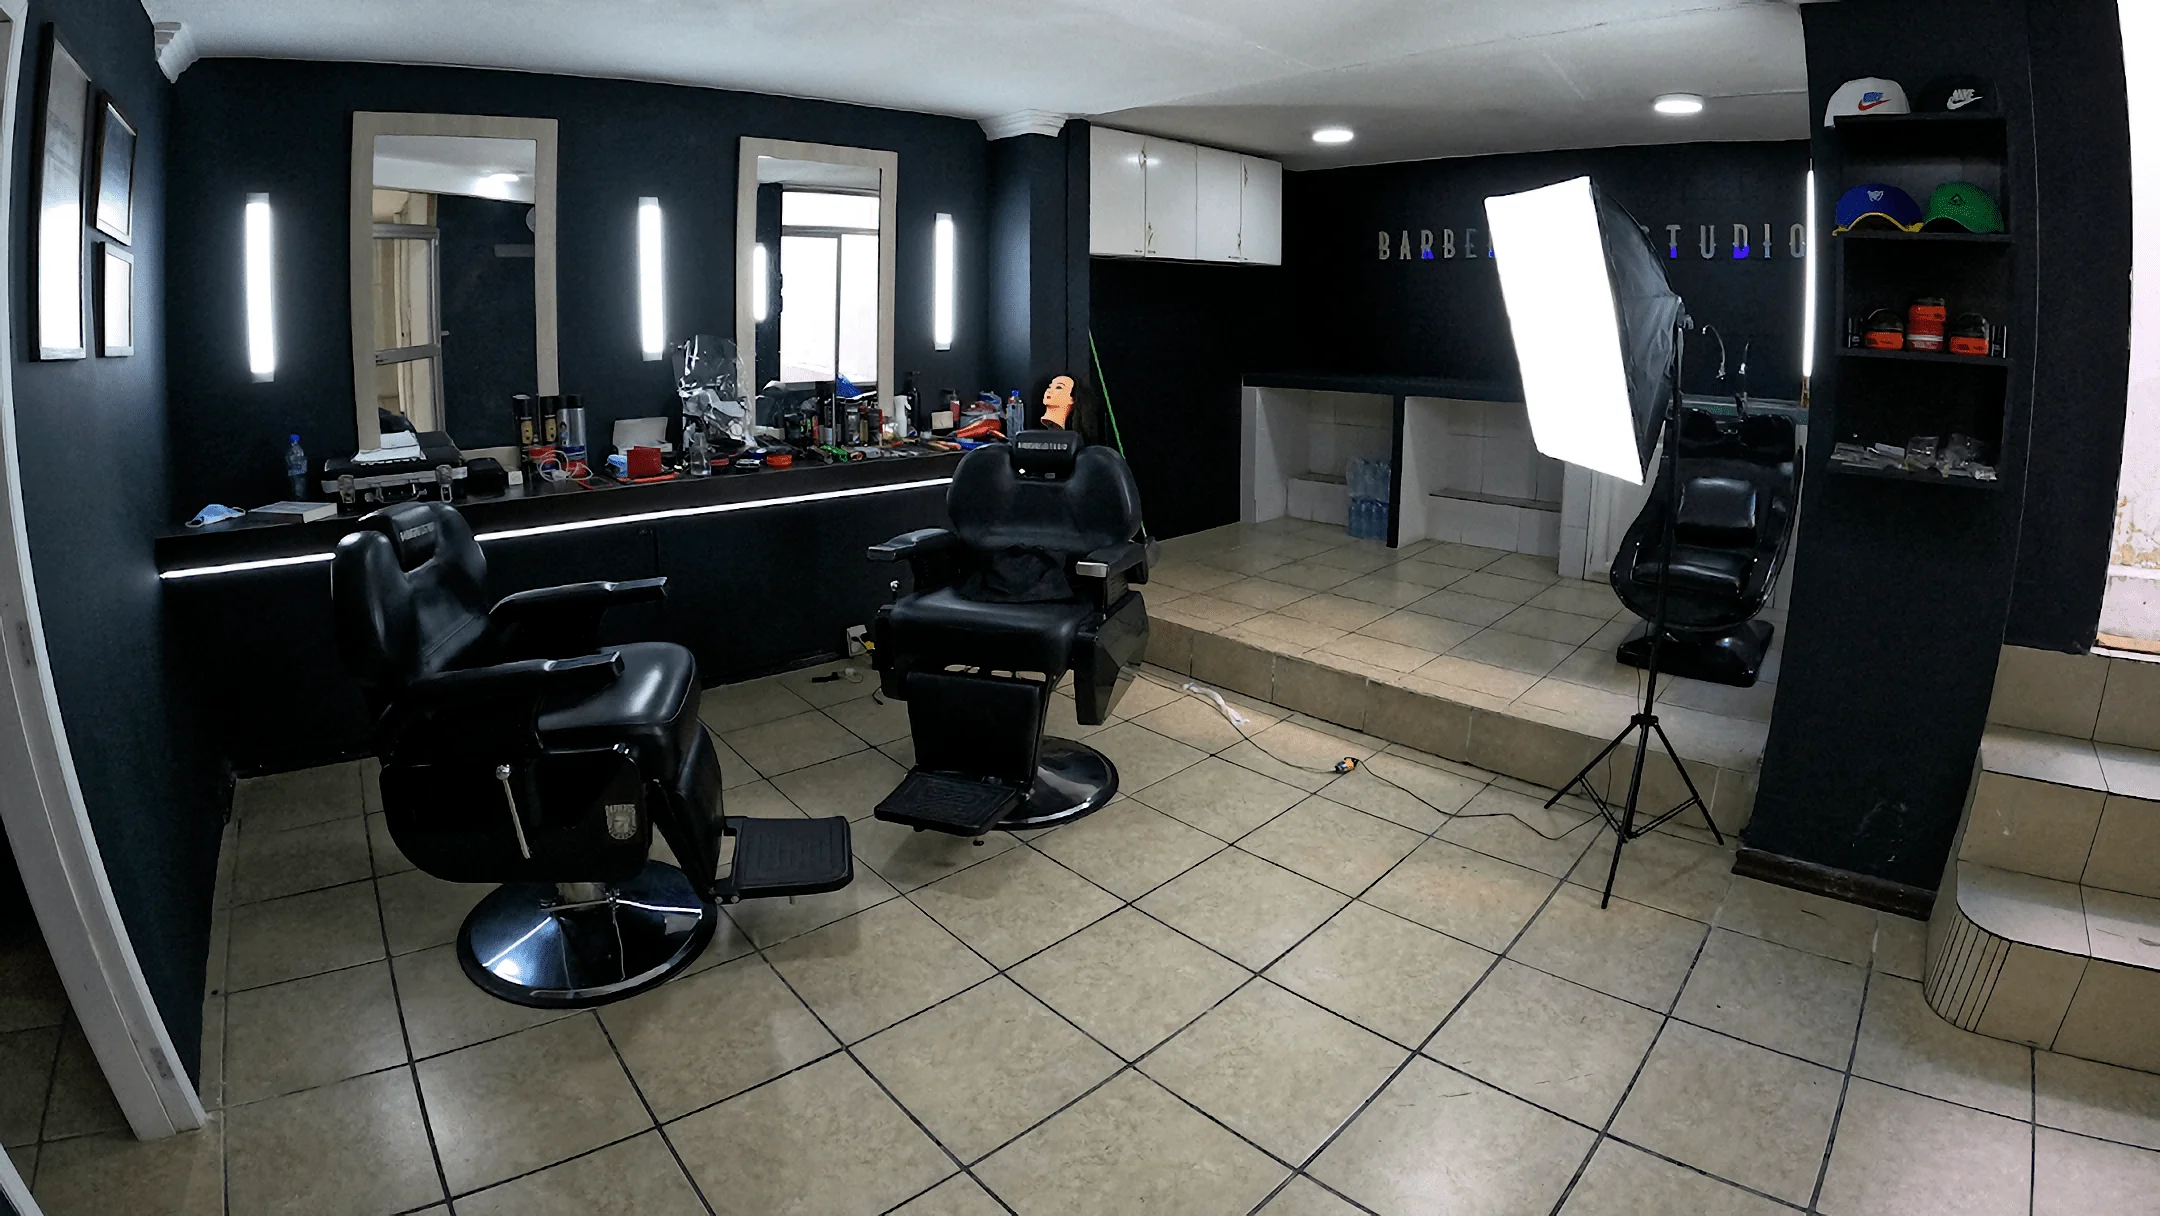 Barbería-barberos-estudio-12714